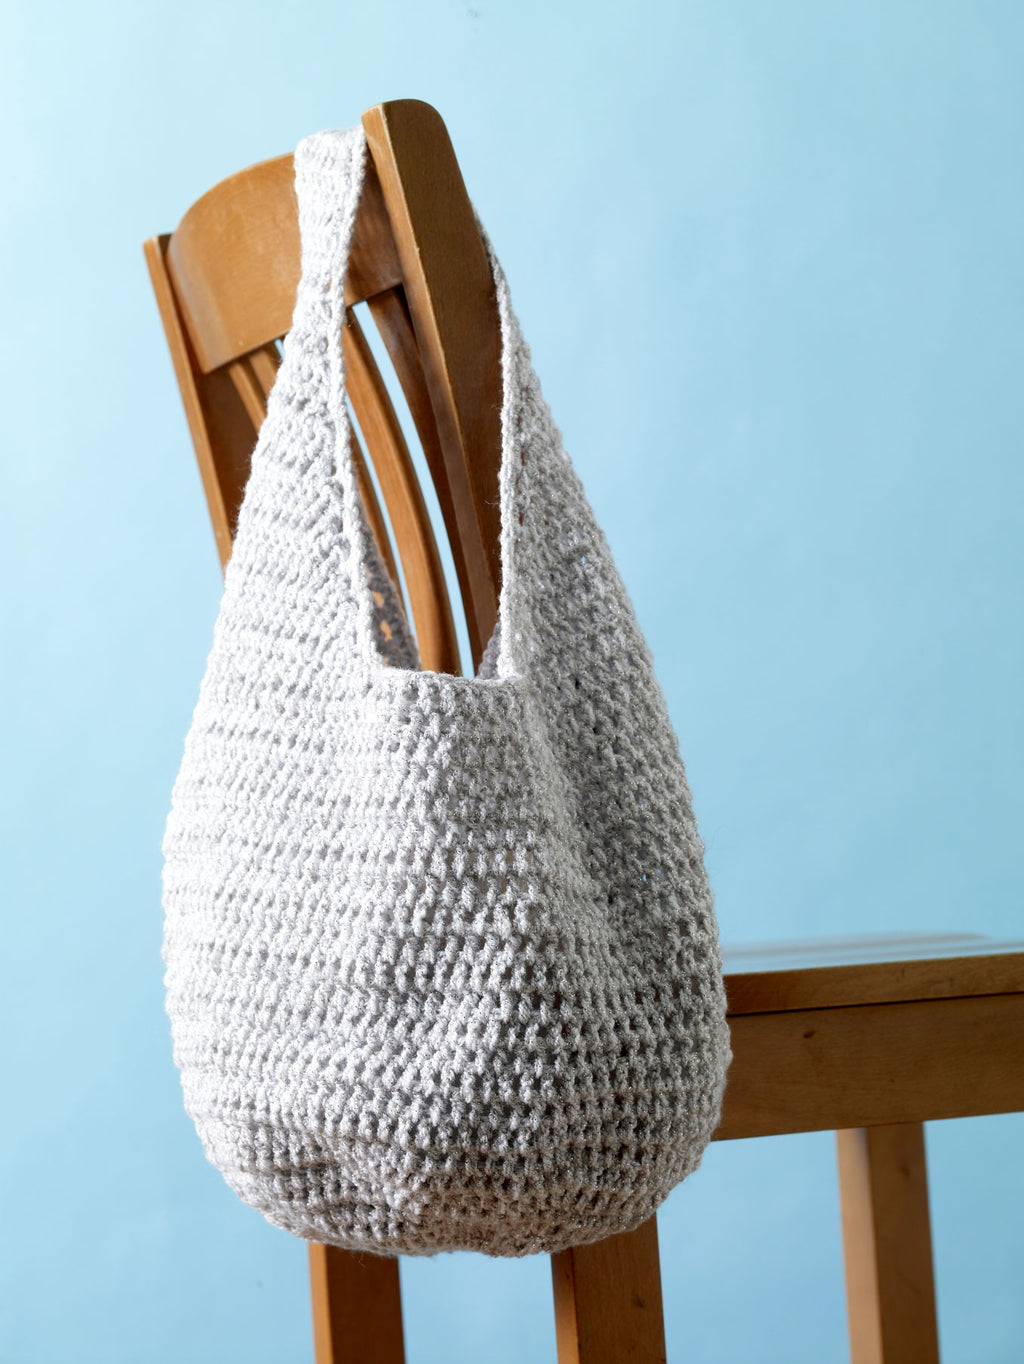 Light Blue Crochet Tote Bag